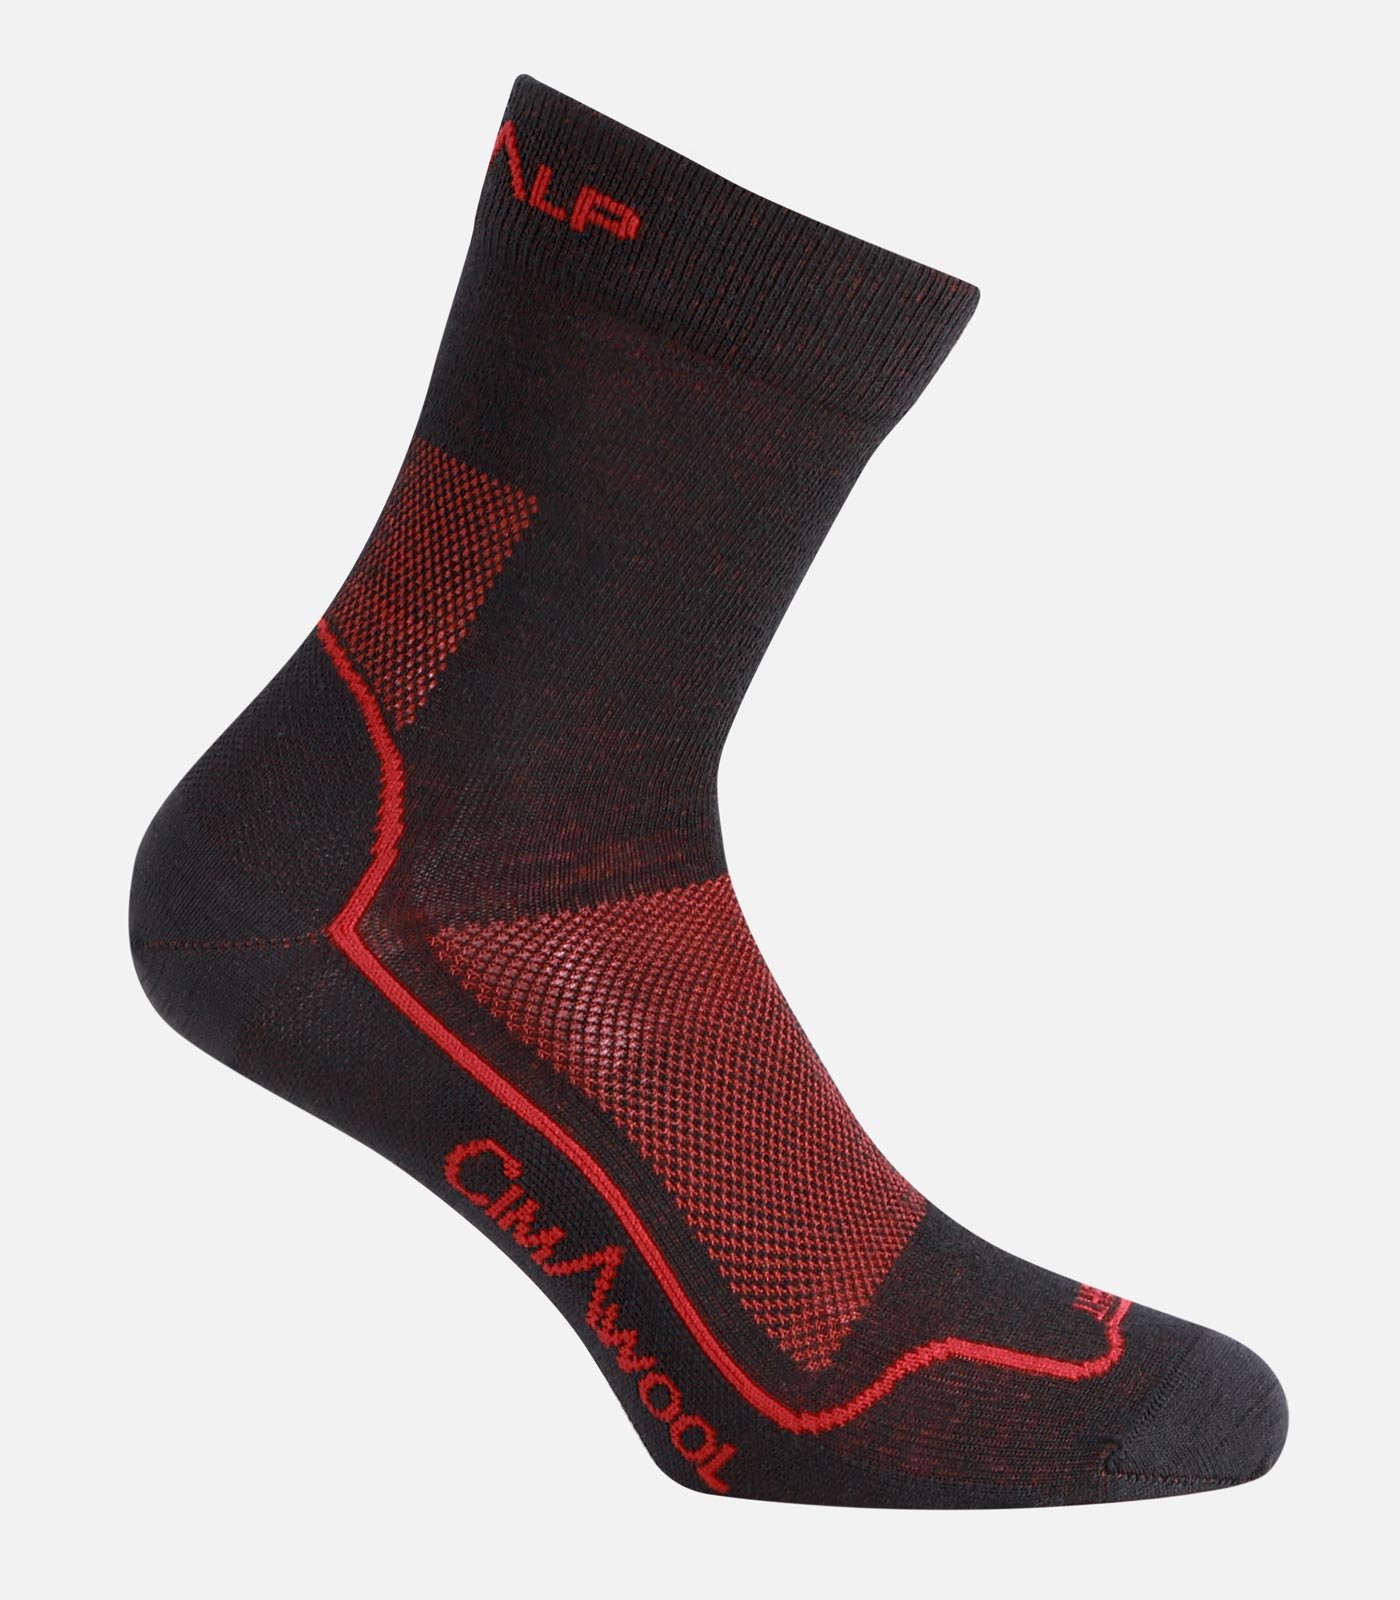 Leichte Merino-Socken